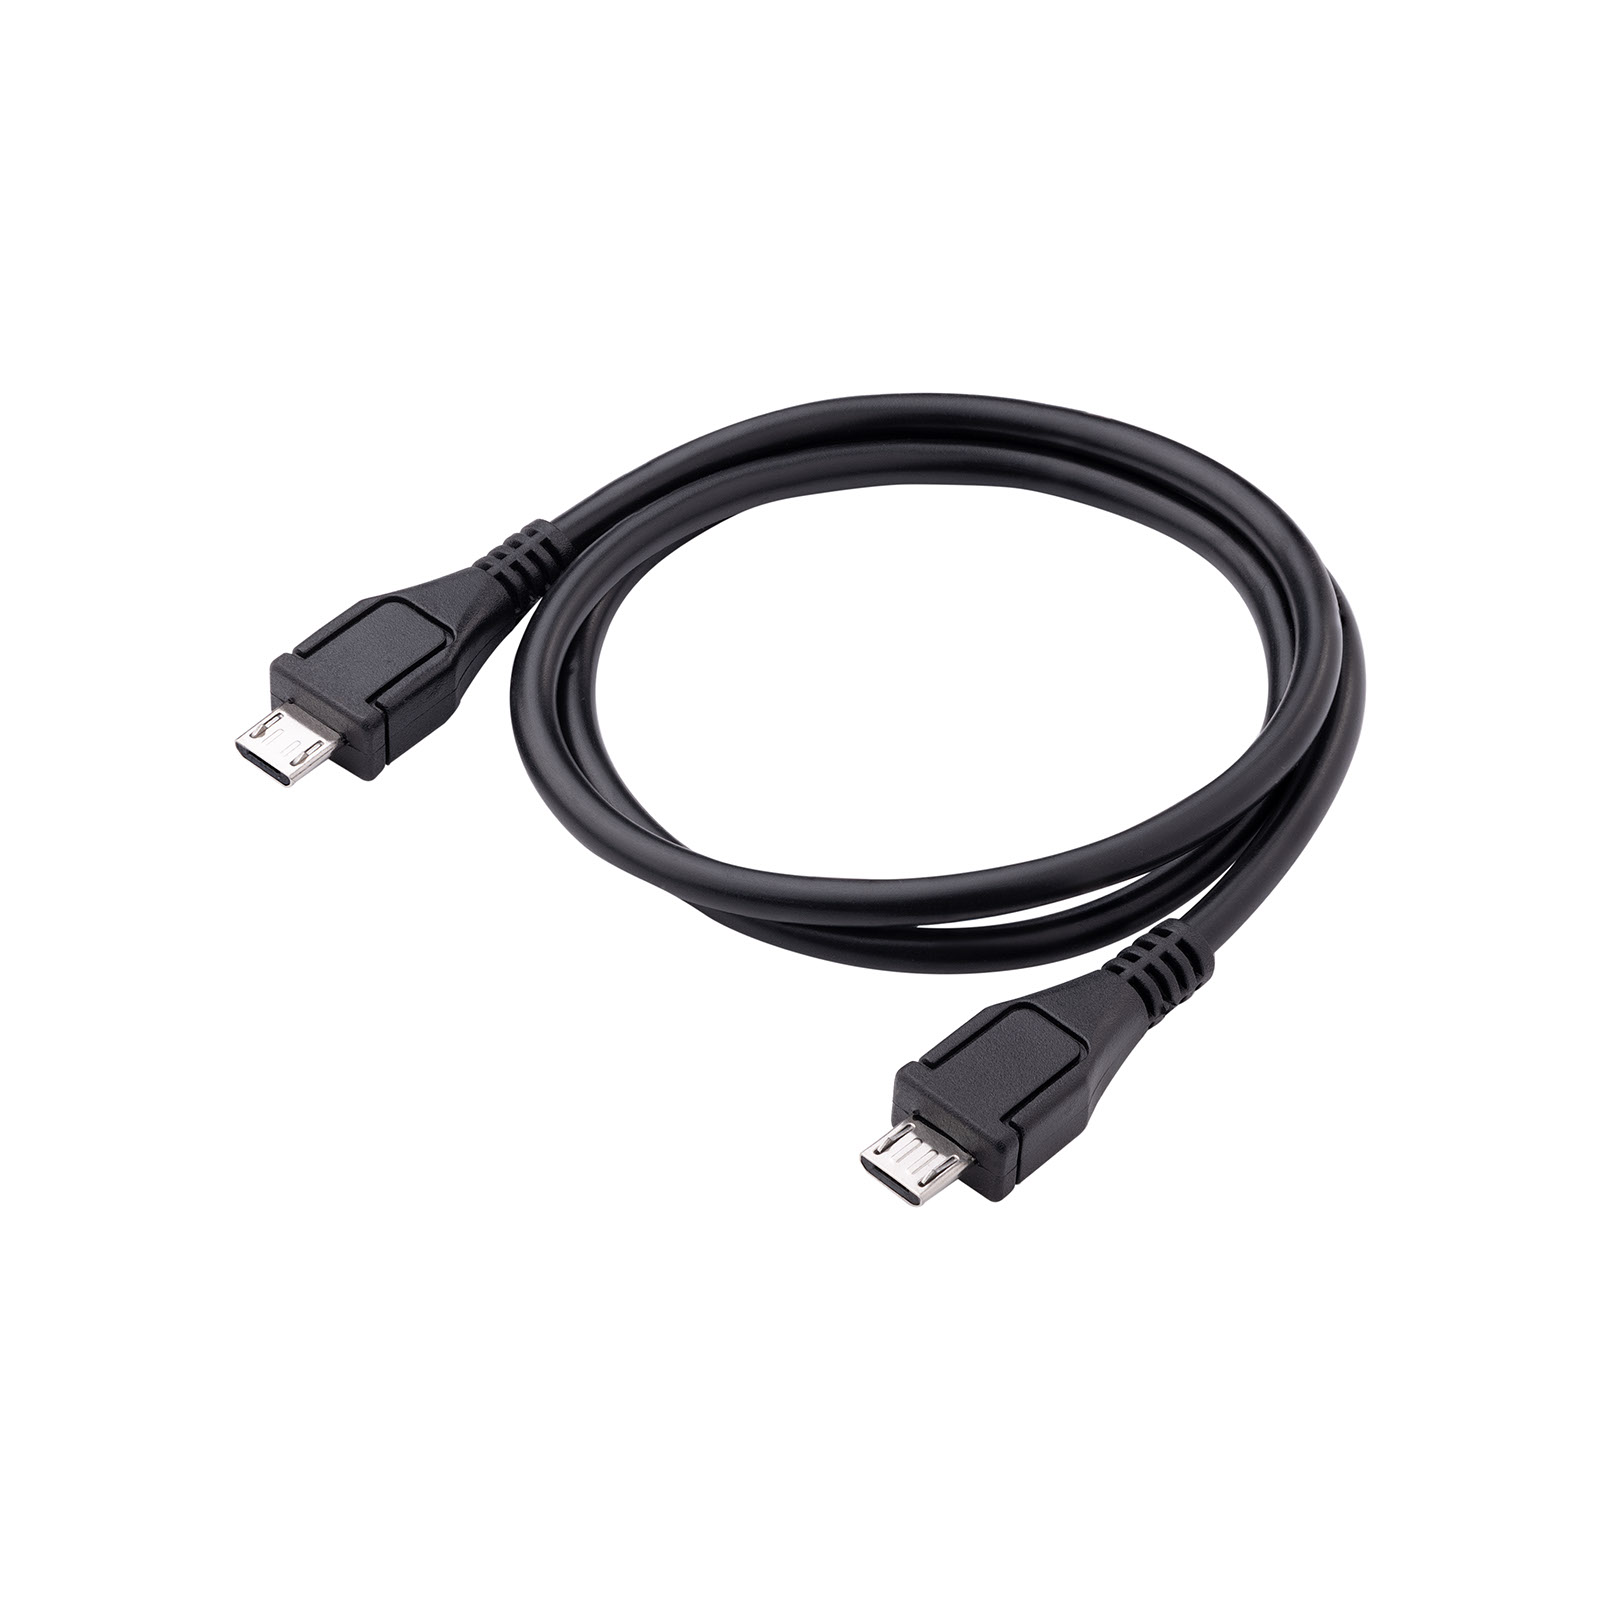 Main image Cable USB B / USB Micro B 60cm AK-USB-17